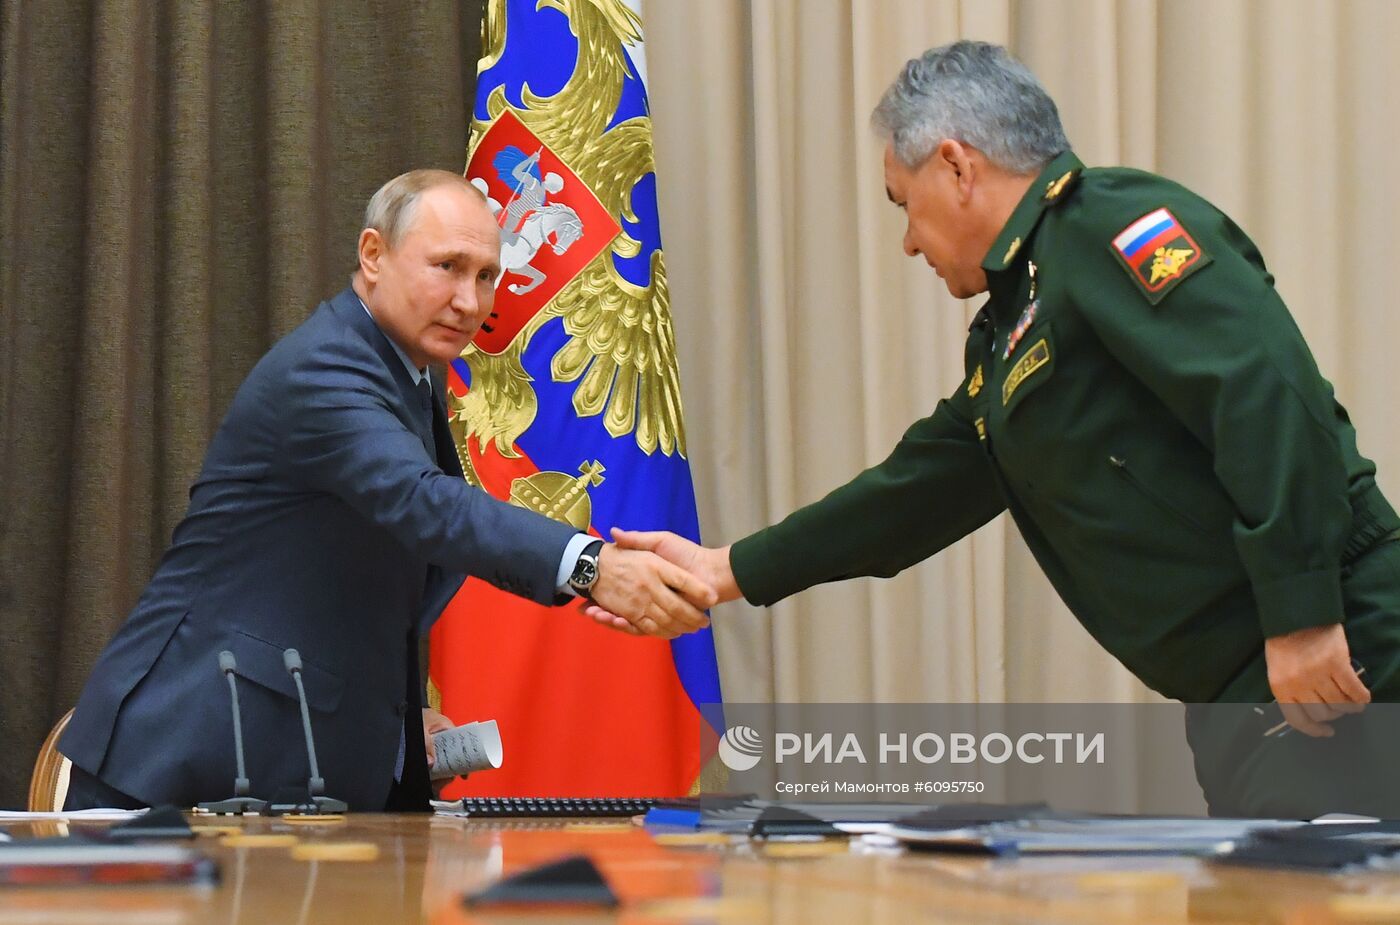 Президент РФ В. Путин провел совещание с руководством Минобороны и предприятий ОПК